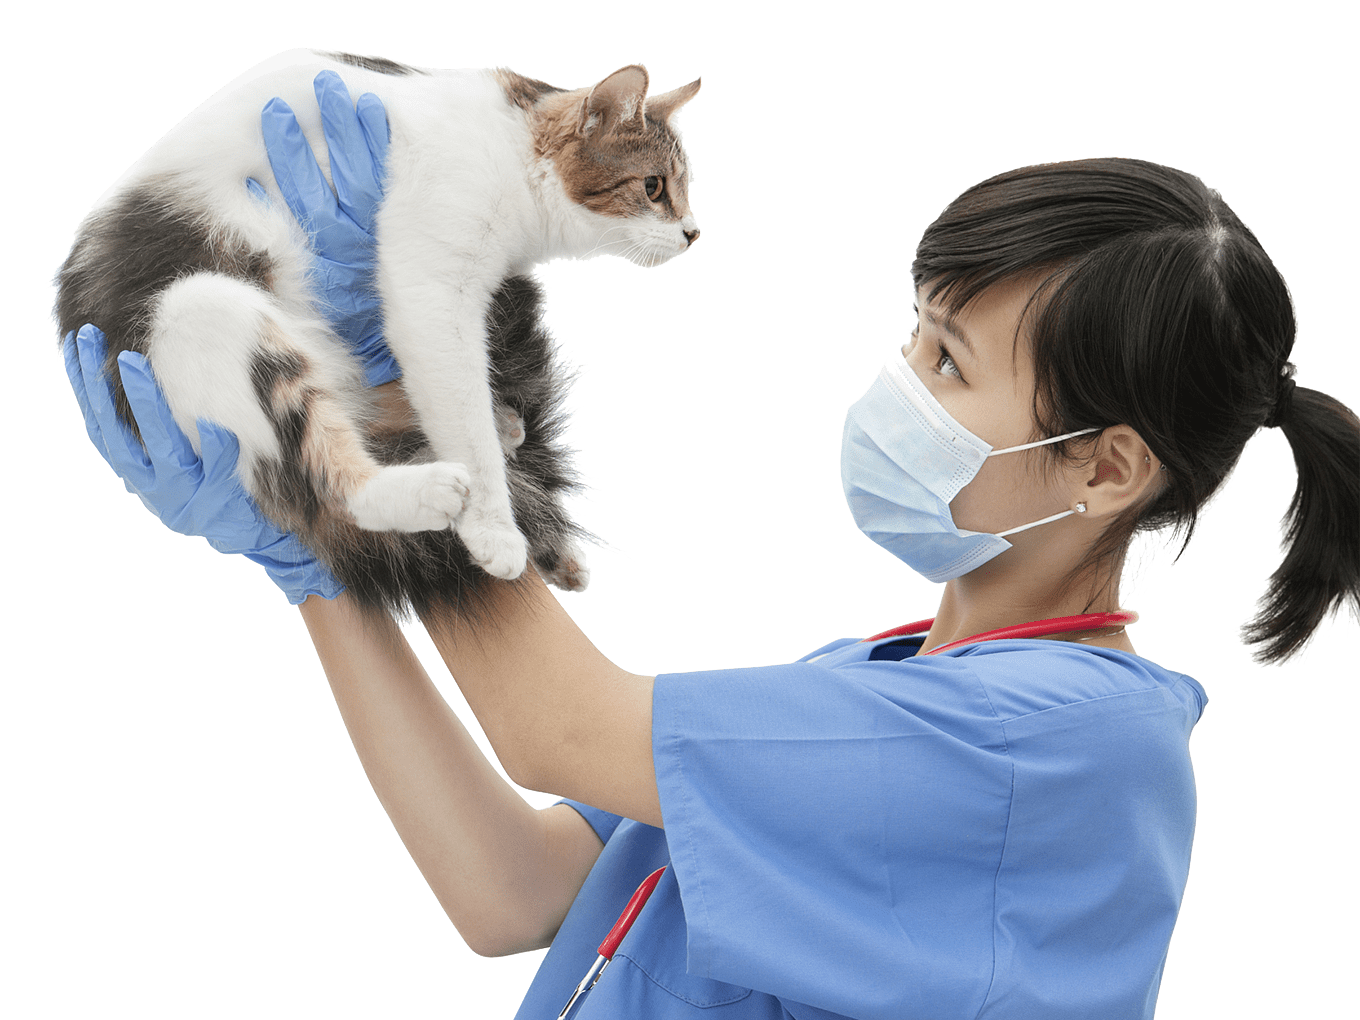 ¿Con qué frecuencia llevas a tu gato al veterinario?